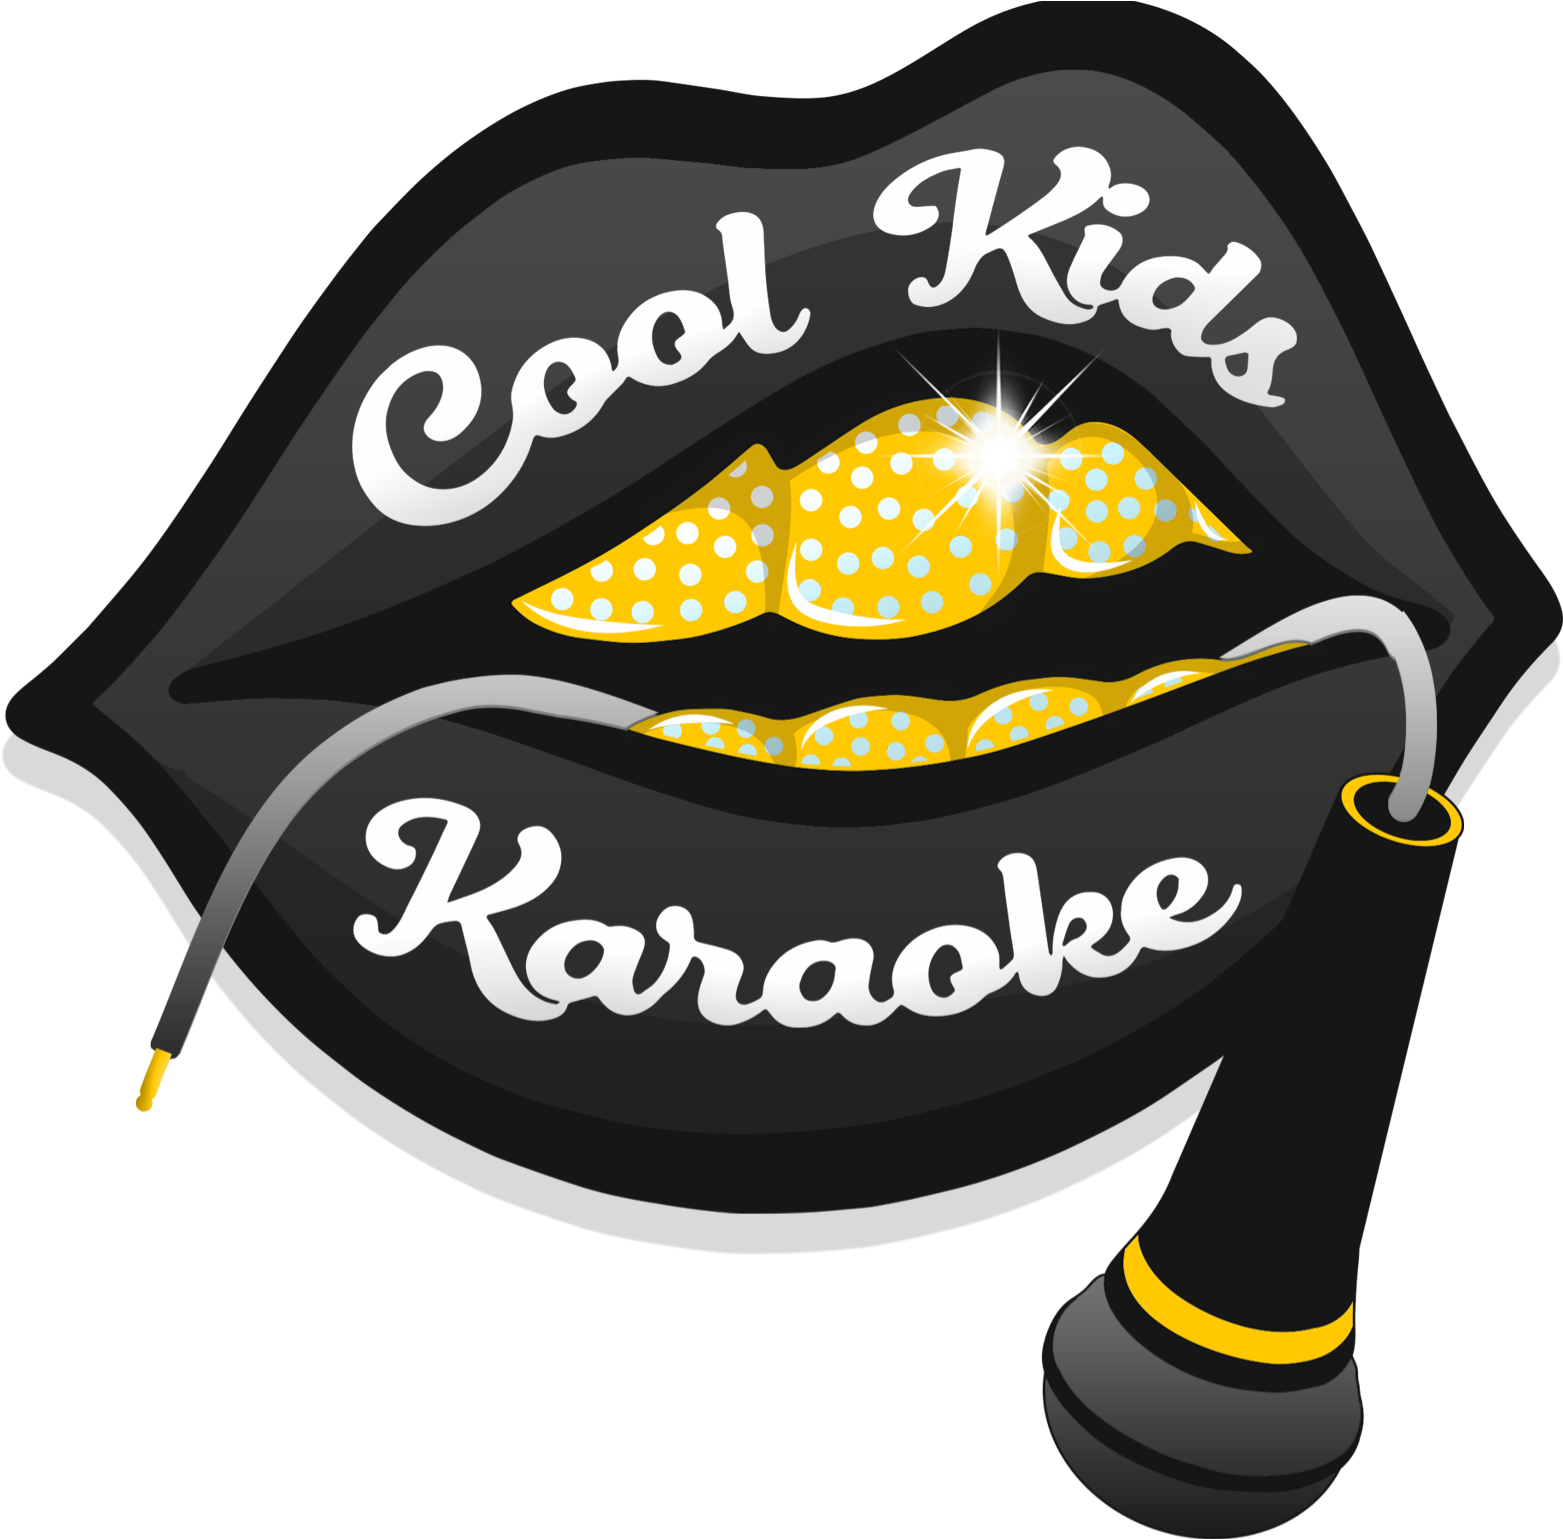 Cool Kids Karaoke - Illustration Clipart (3000x1538), Png Download